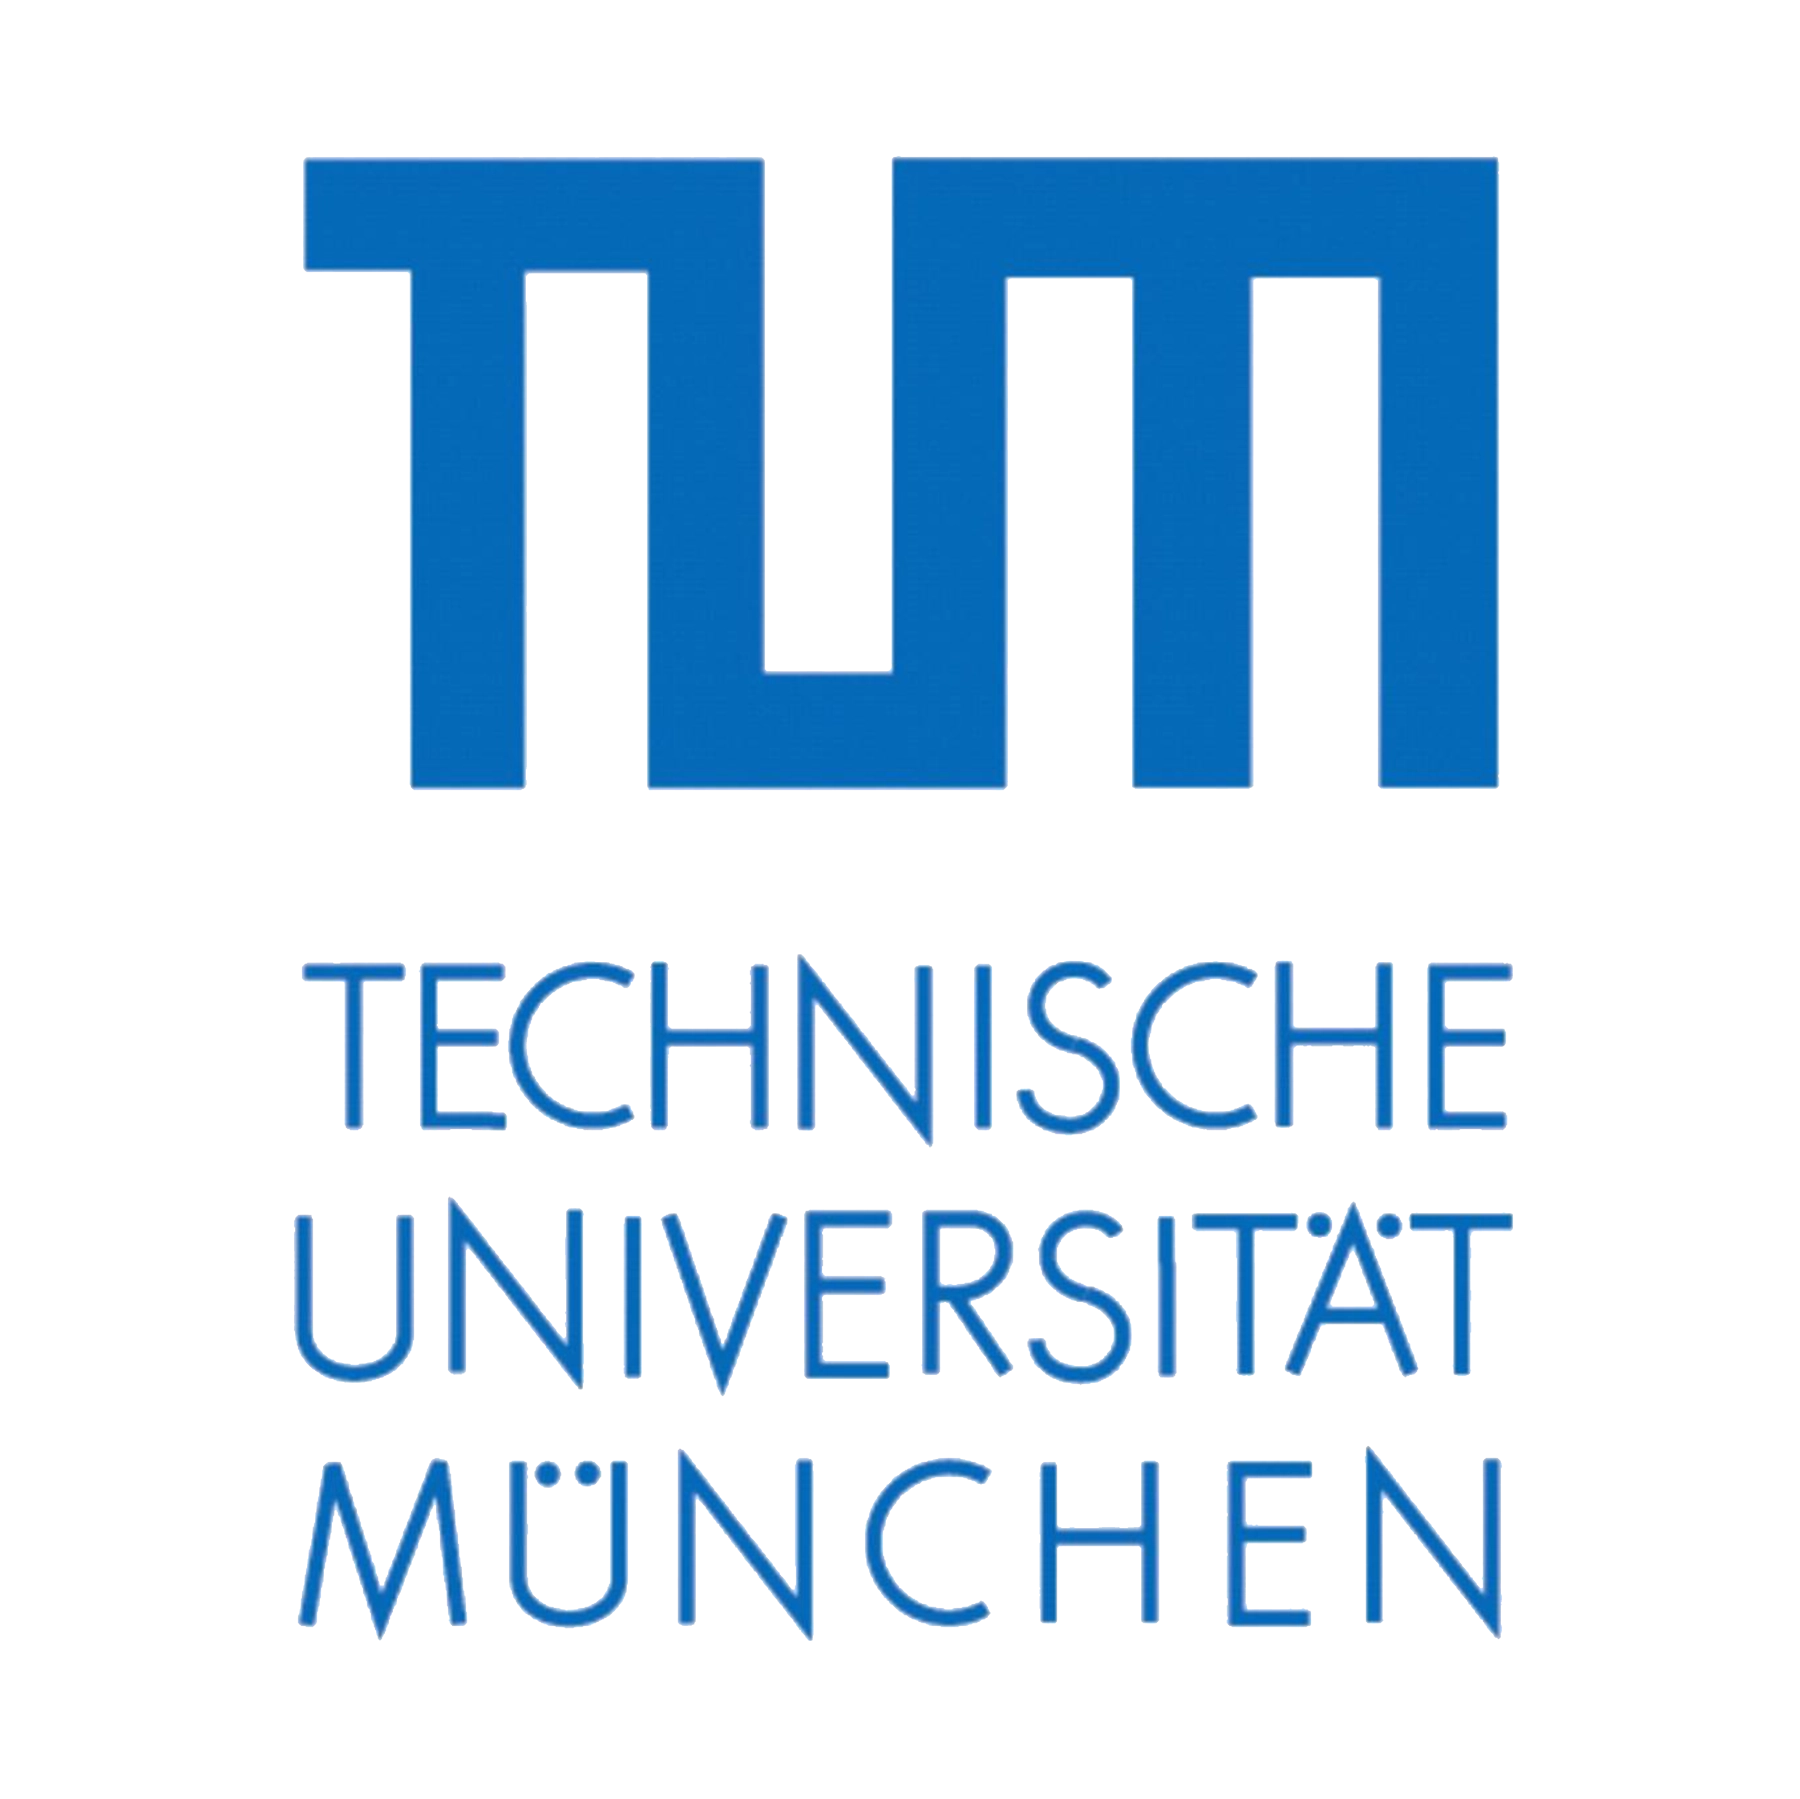 慕尼黑工业大学 机电一体化与机器人 理学硕士| Master of Science|MSc